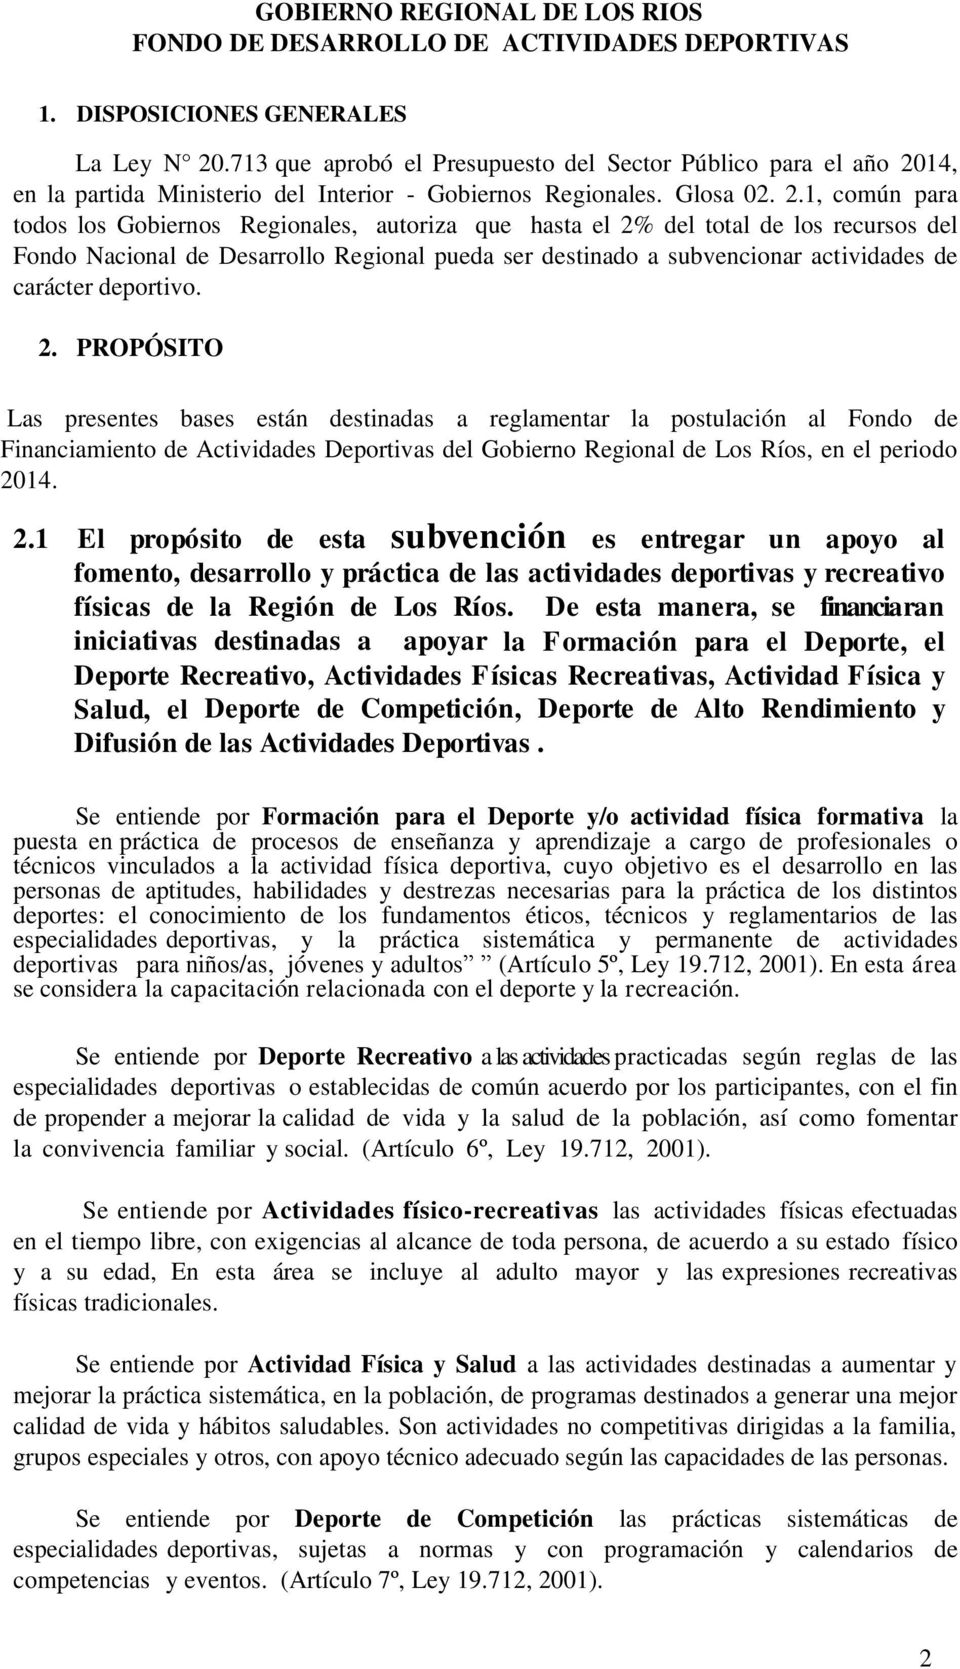 14, en la partida Ministerio del Interior - Gobiernos Regionales. Glosa 02. 2.